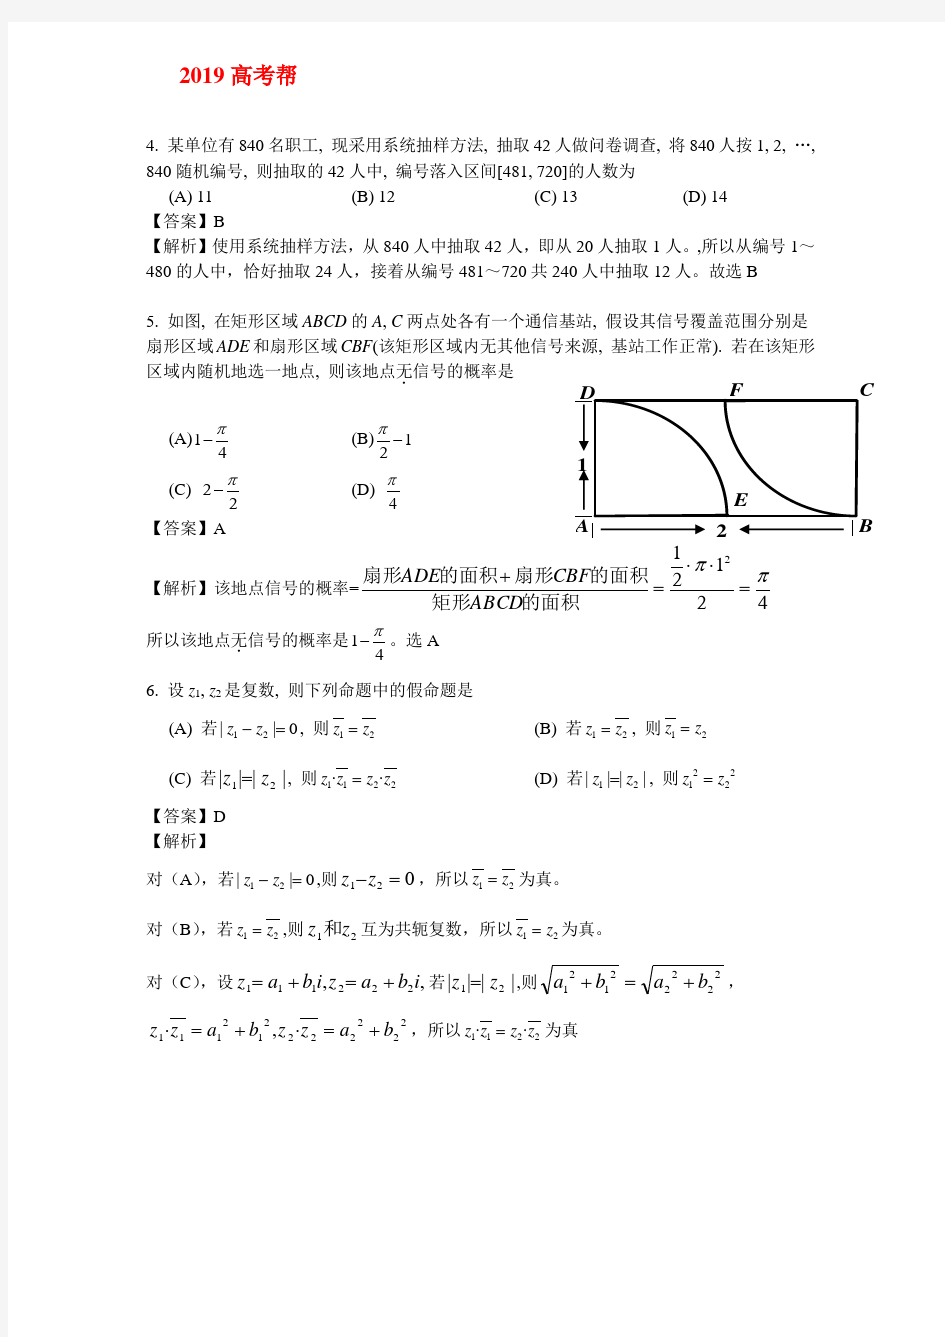 2013年高考陕西卷理科数学试题及答案